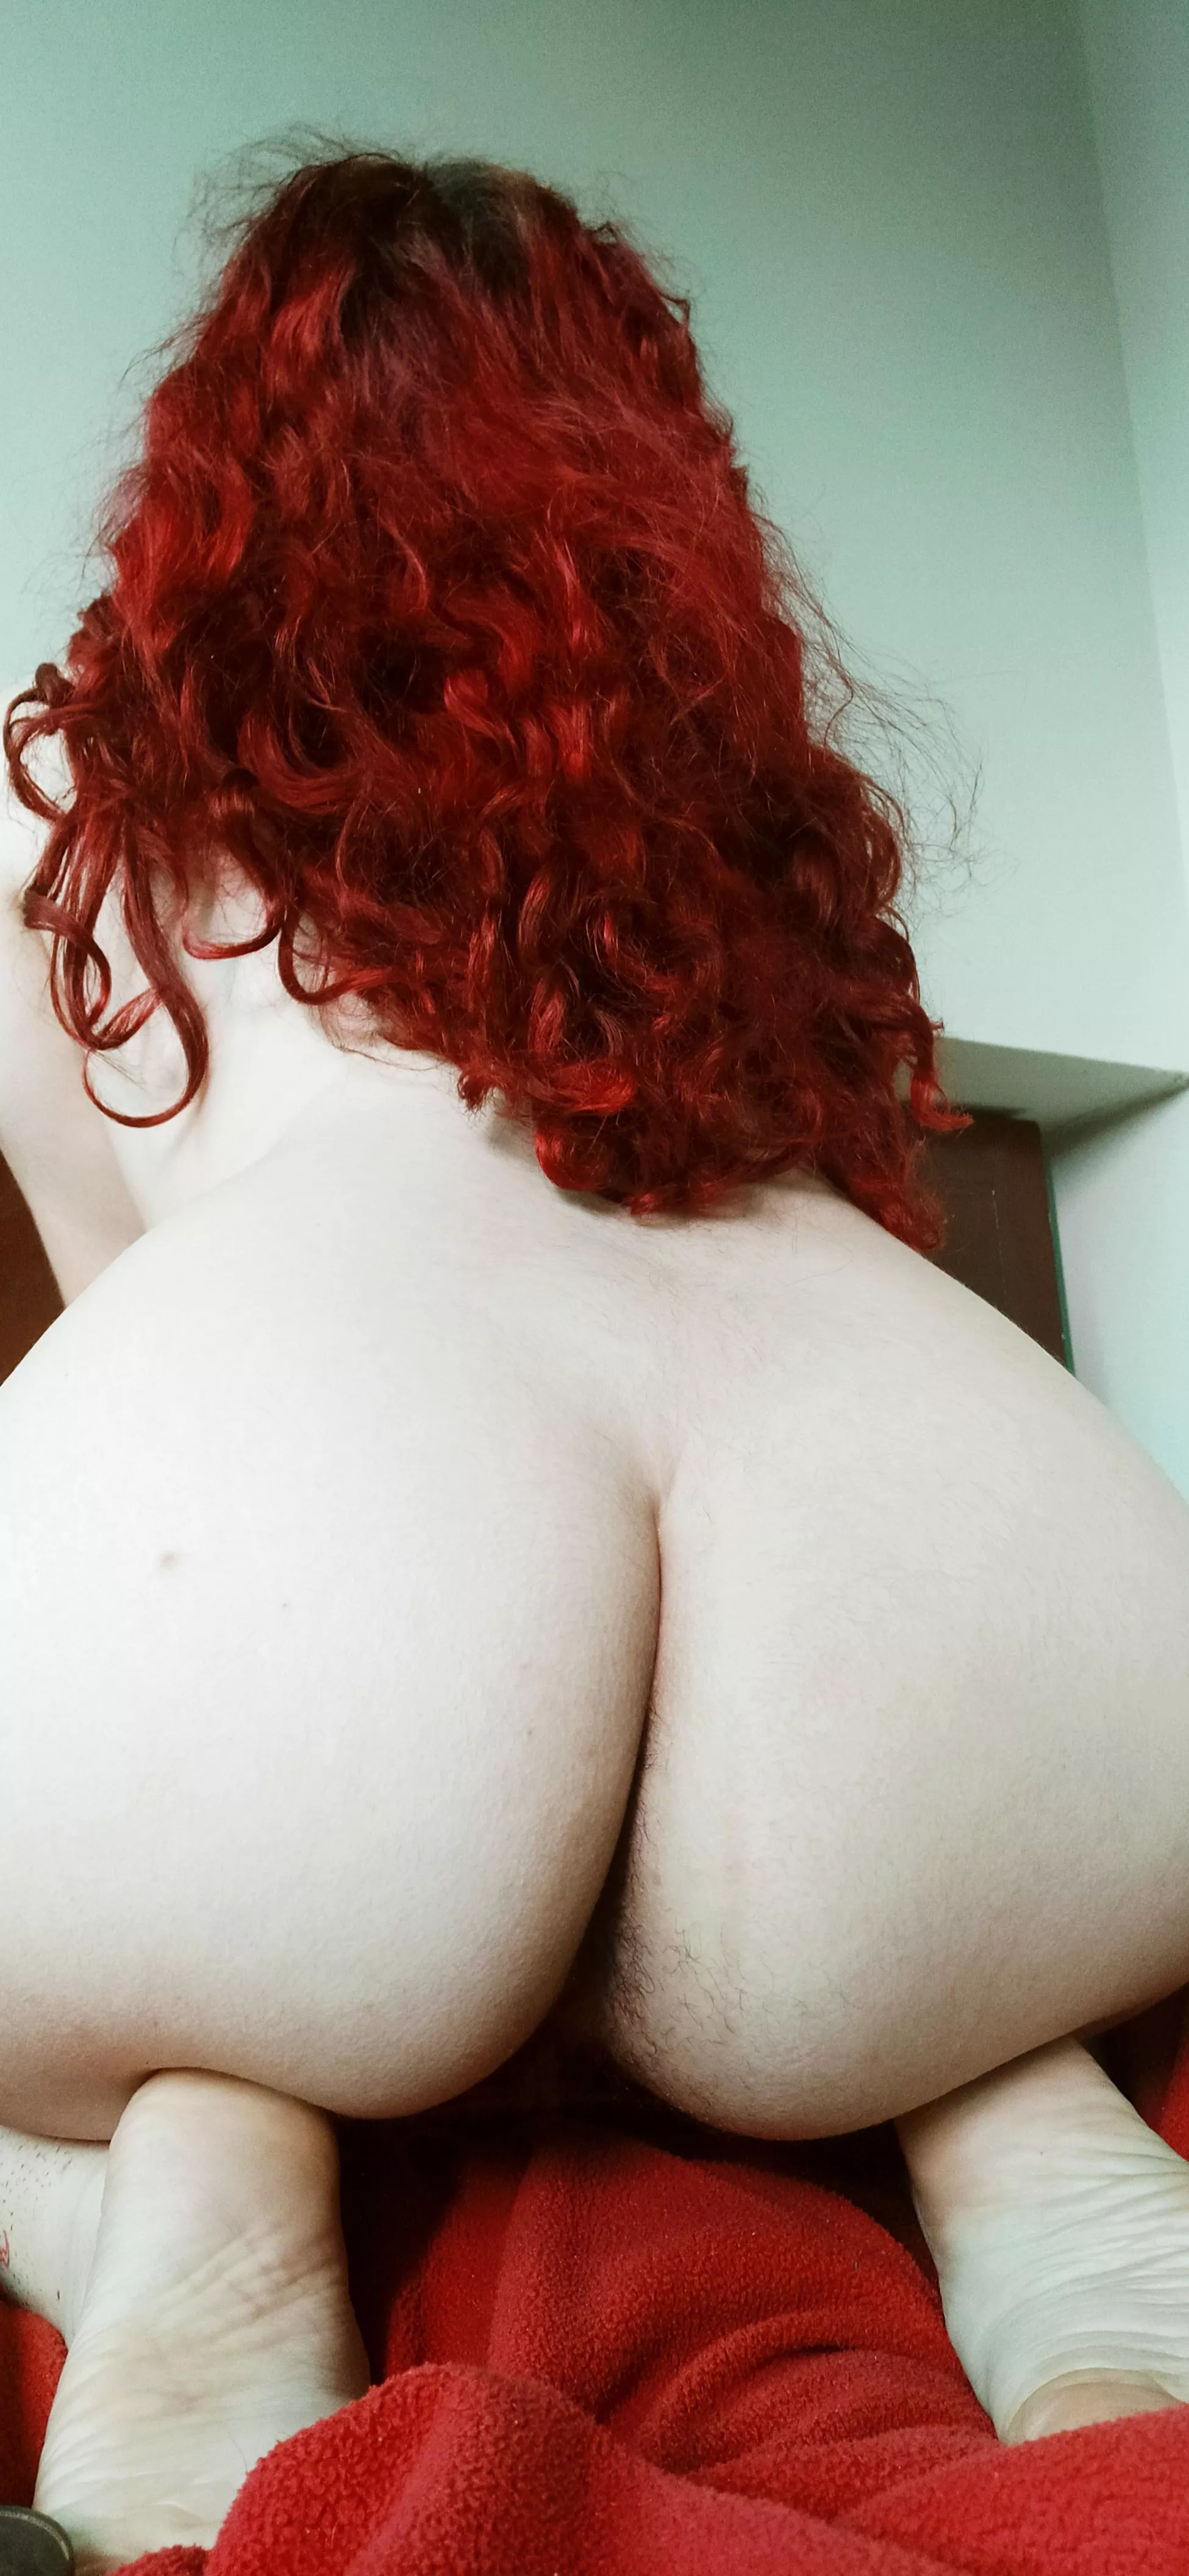 Redhead Hairy Nude